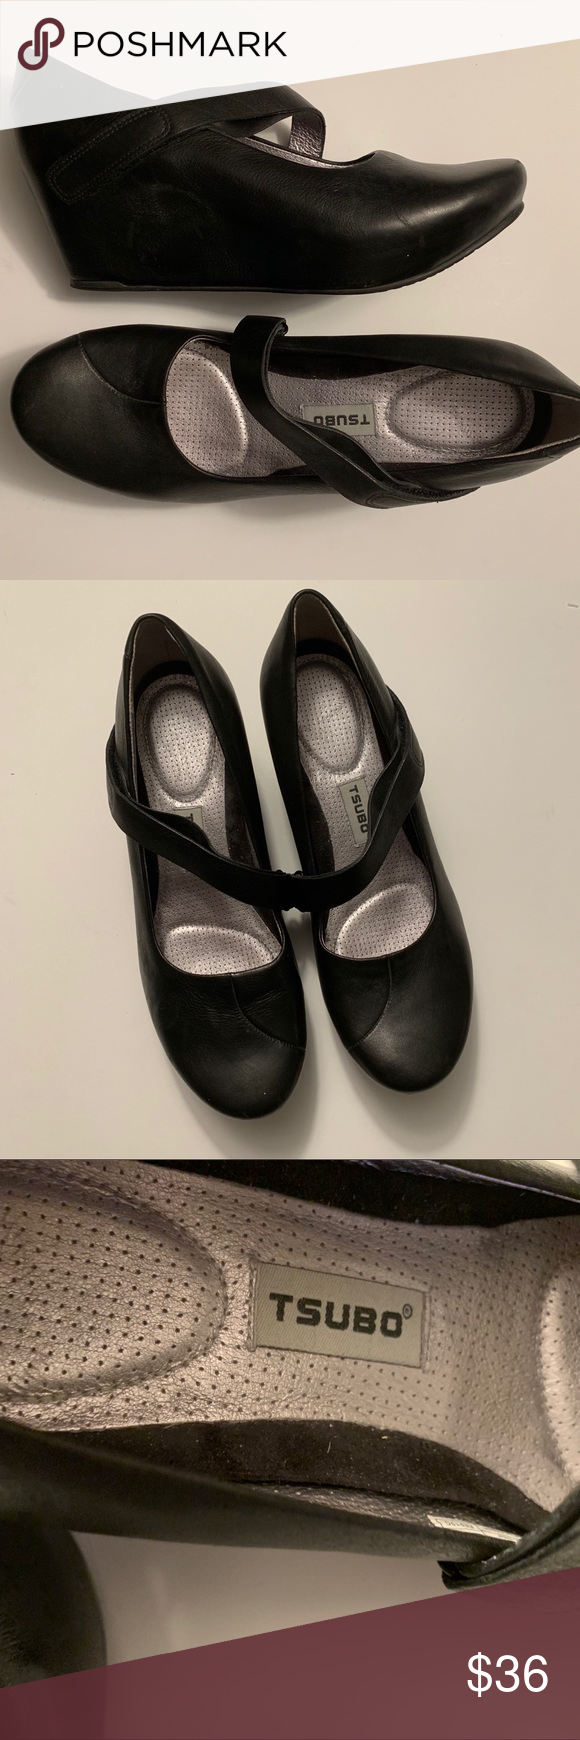 Tsubo wedge leather Mary Jane black shoes EUC Tsubo brand black leather Mary Jan…